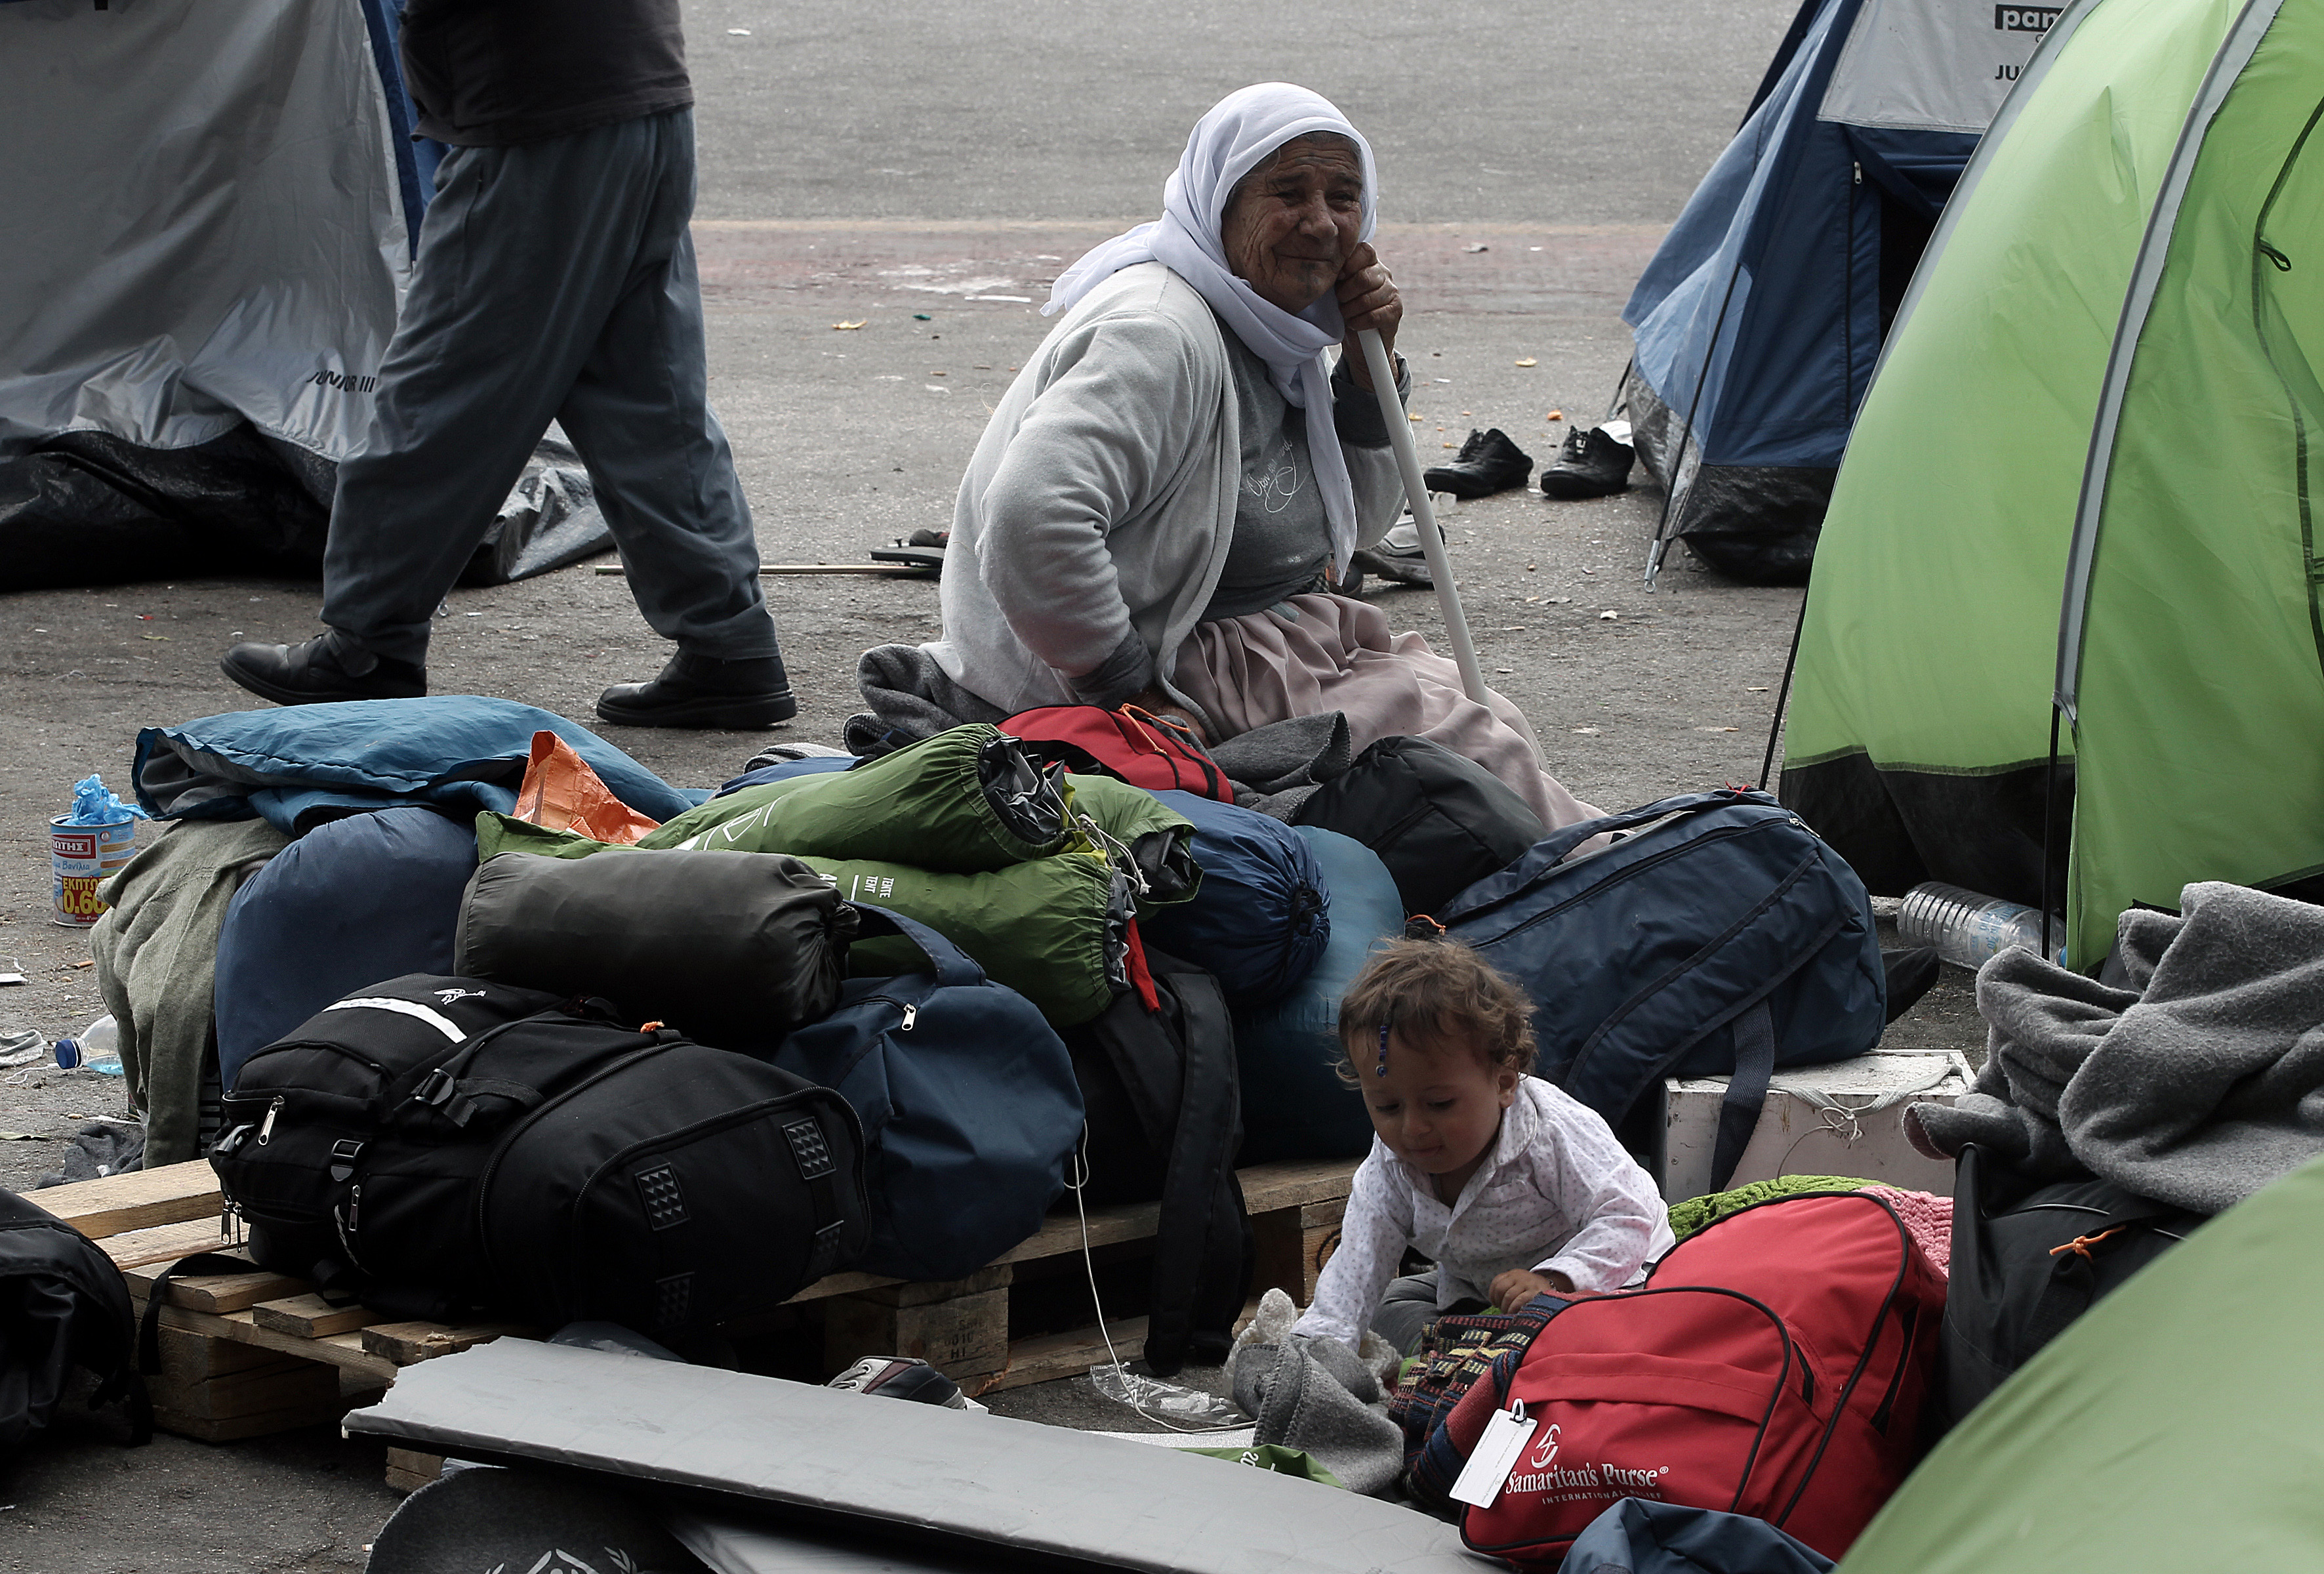 Μικροεντάσεις μεταξύ προσφύγων την Πέμπτη στον Πειραιά